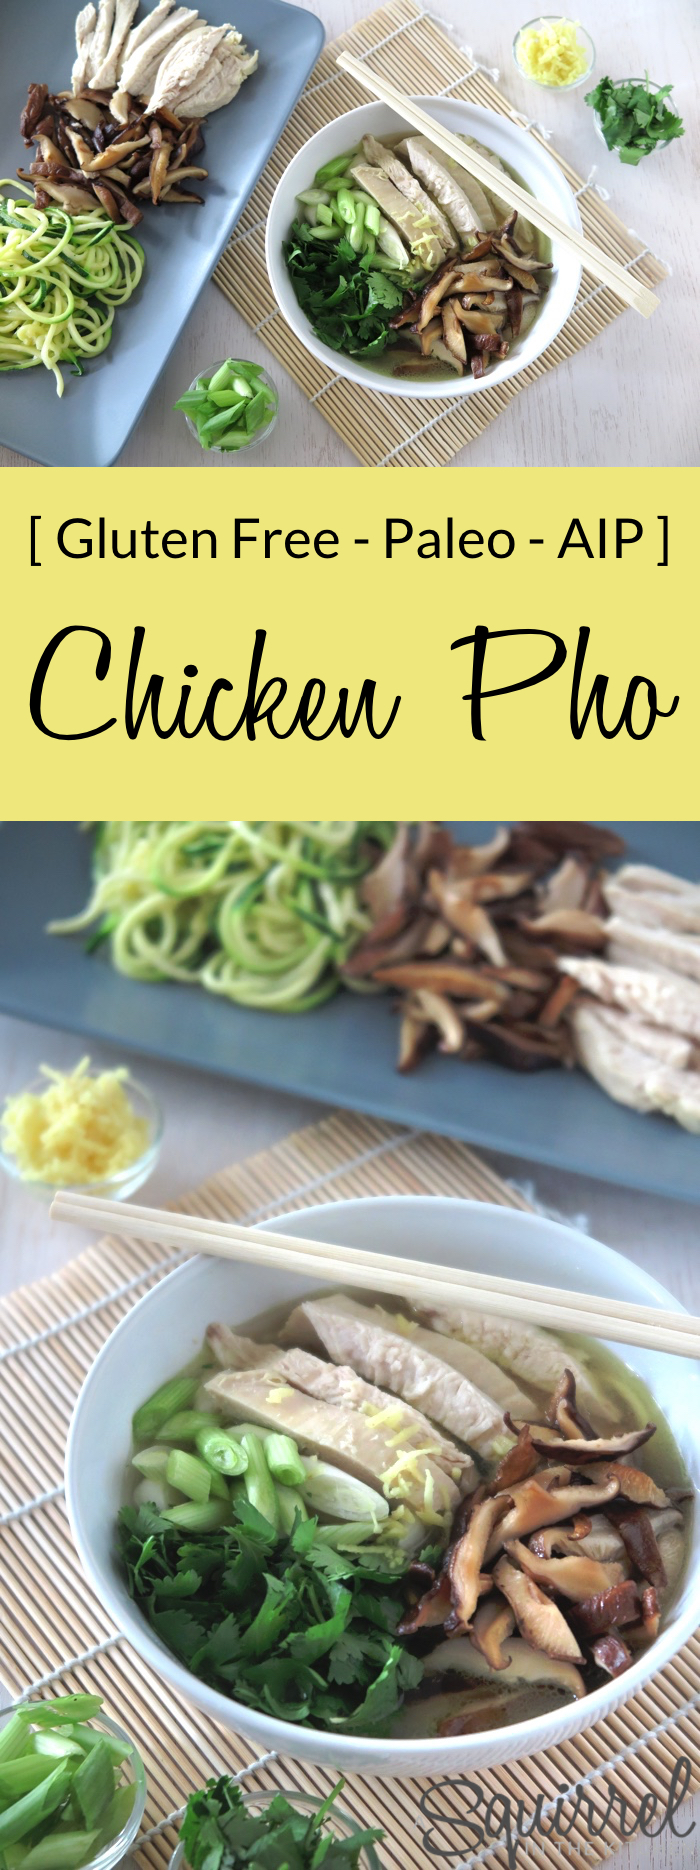 Chicken Pho [ Paleo - AIP - Gluten Free ]